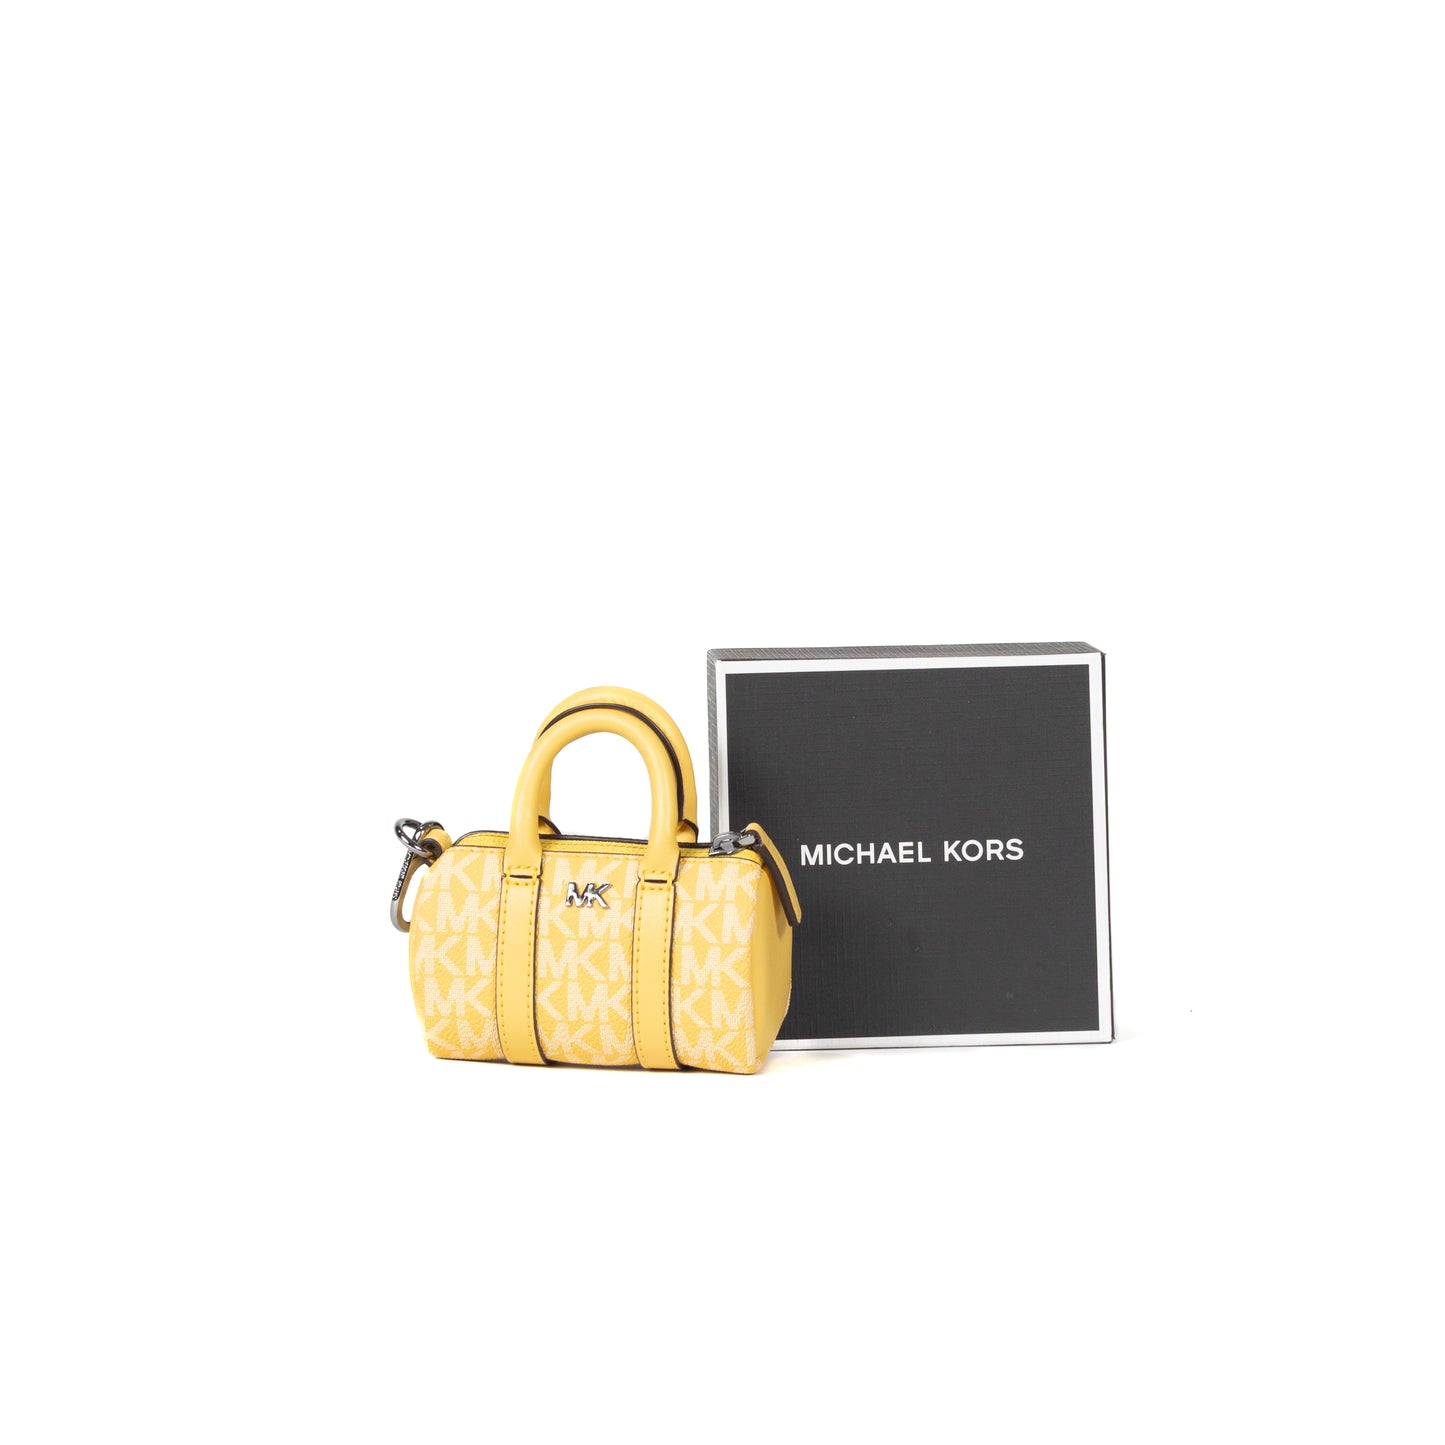 Michael Kors Women's Duffle Bag Micro in Daffodil -36S3LGFK5B